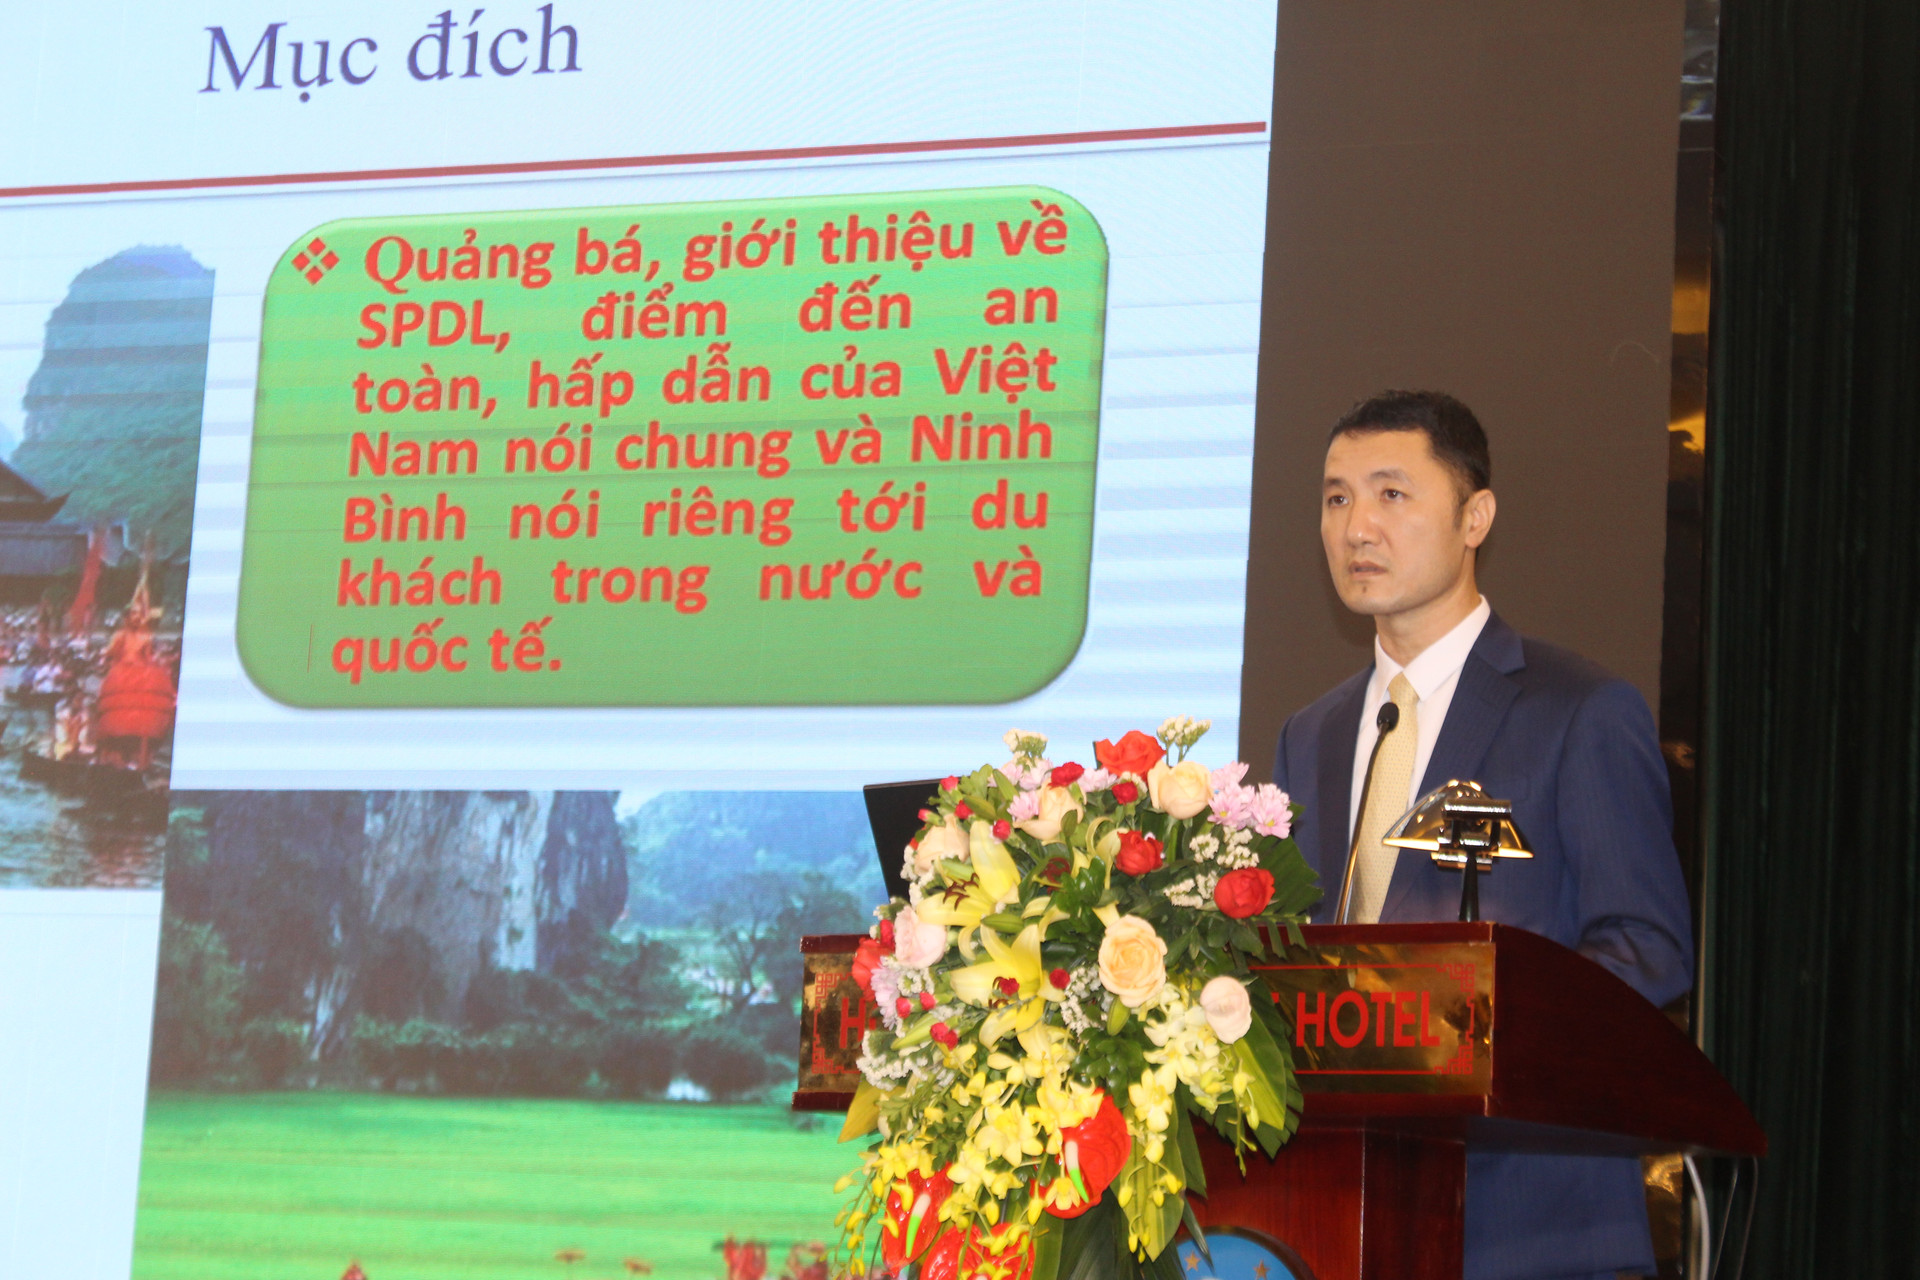 Ông Bùi Văn Mạnh, Giám đốc Sở Du lịch Ninh Bình thông tin về kế hoạch tổ chức Năm du lịch quốc gia 2021.